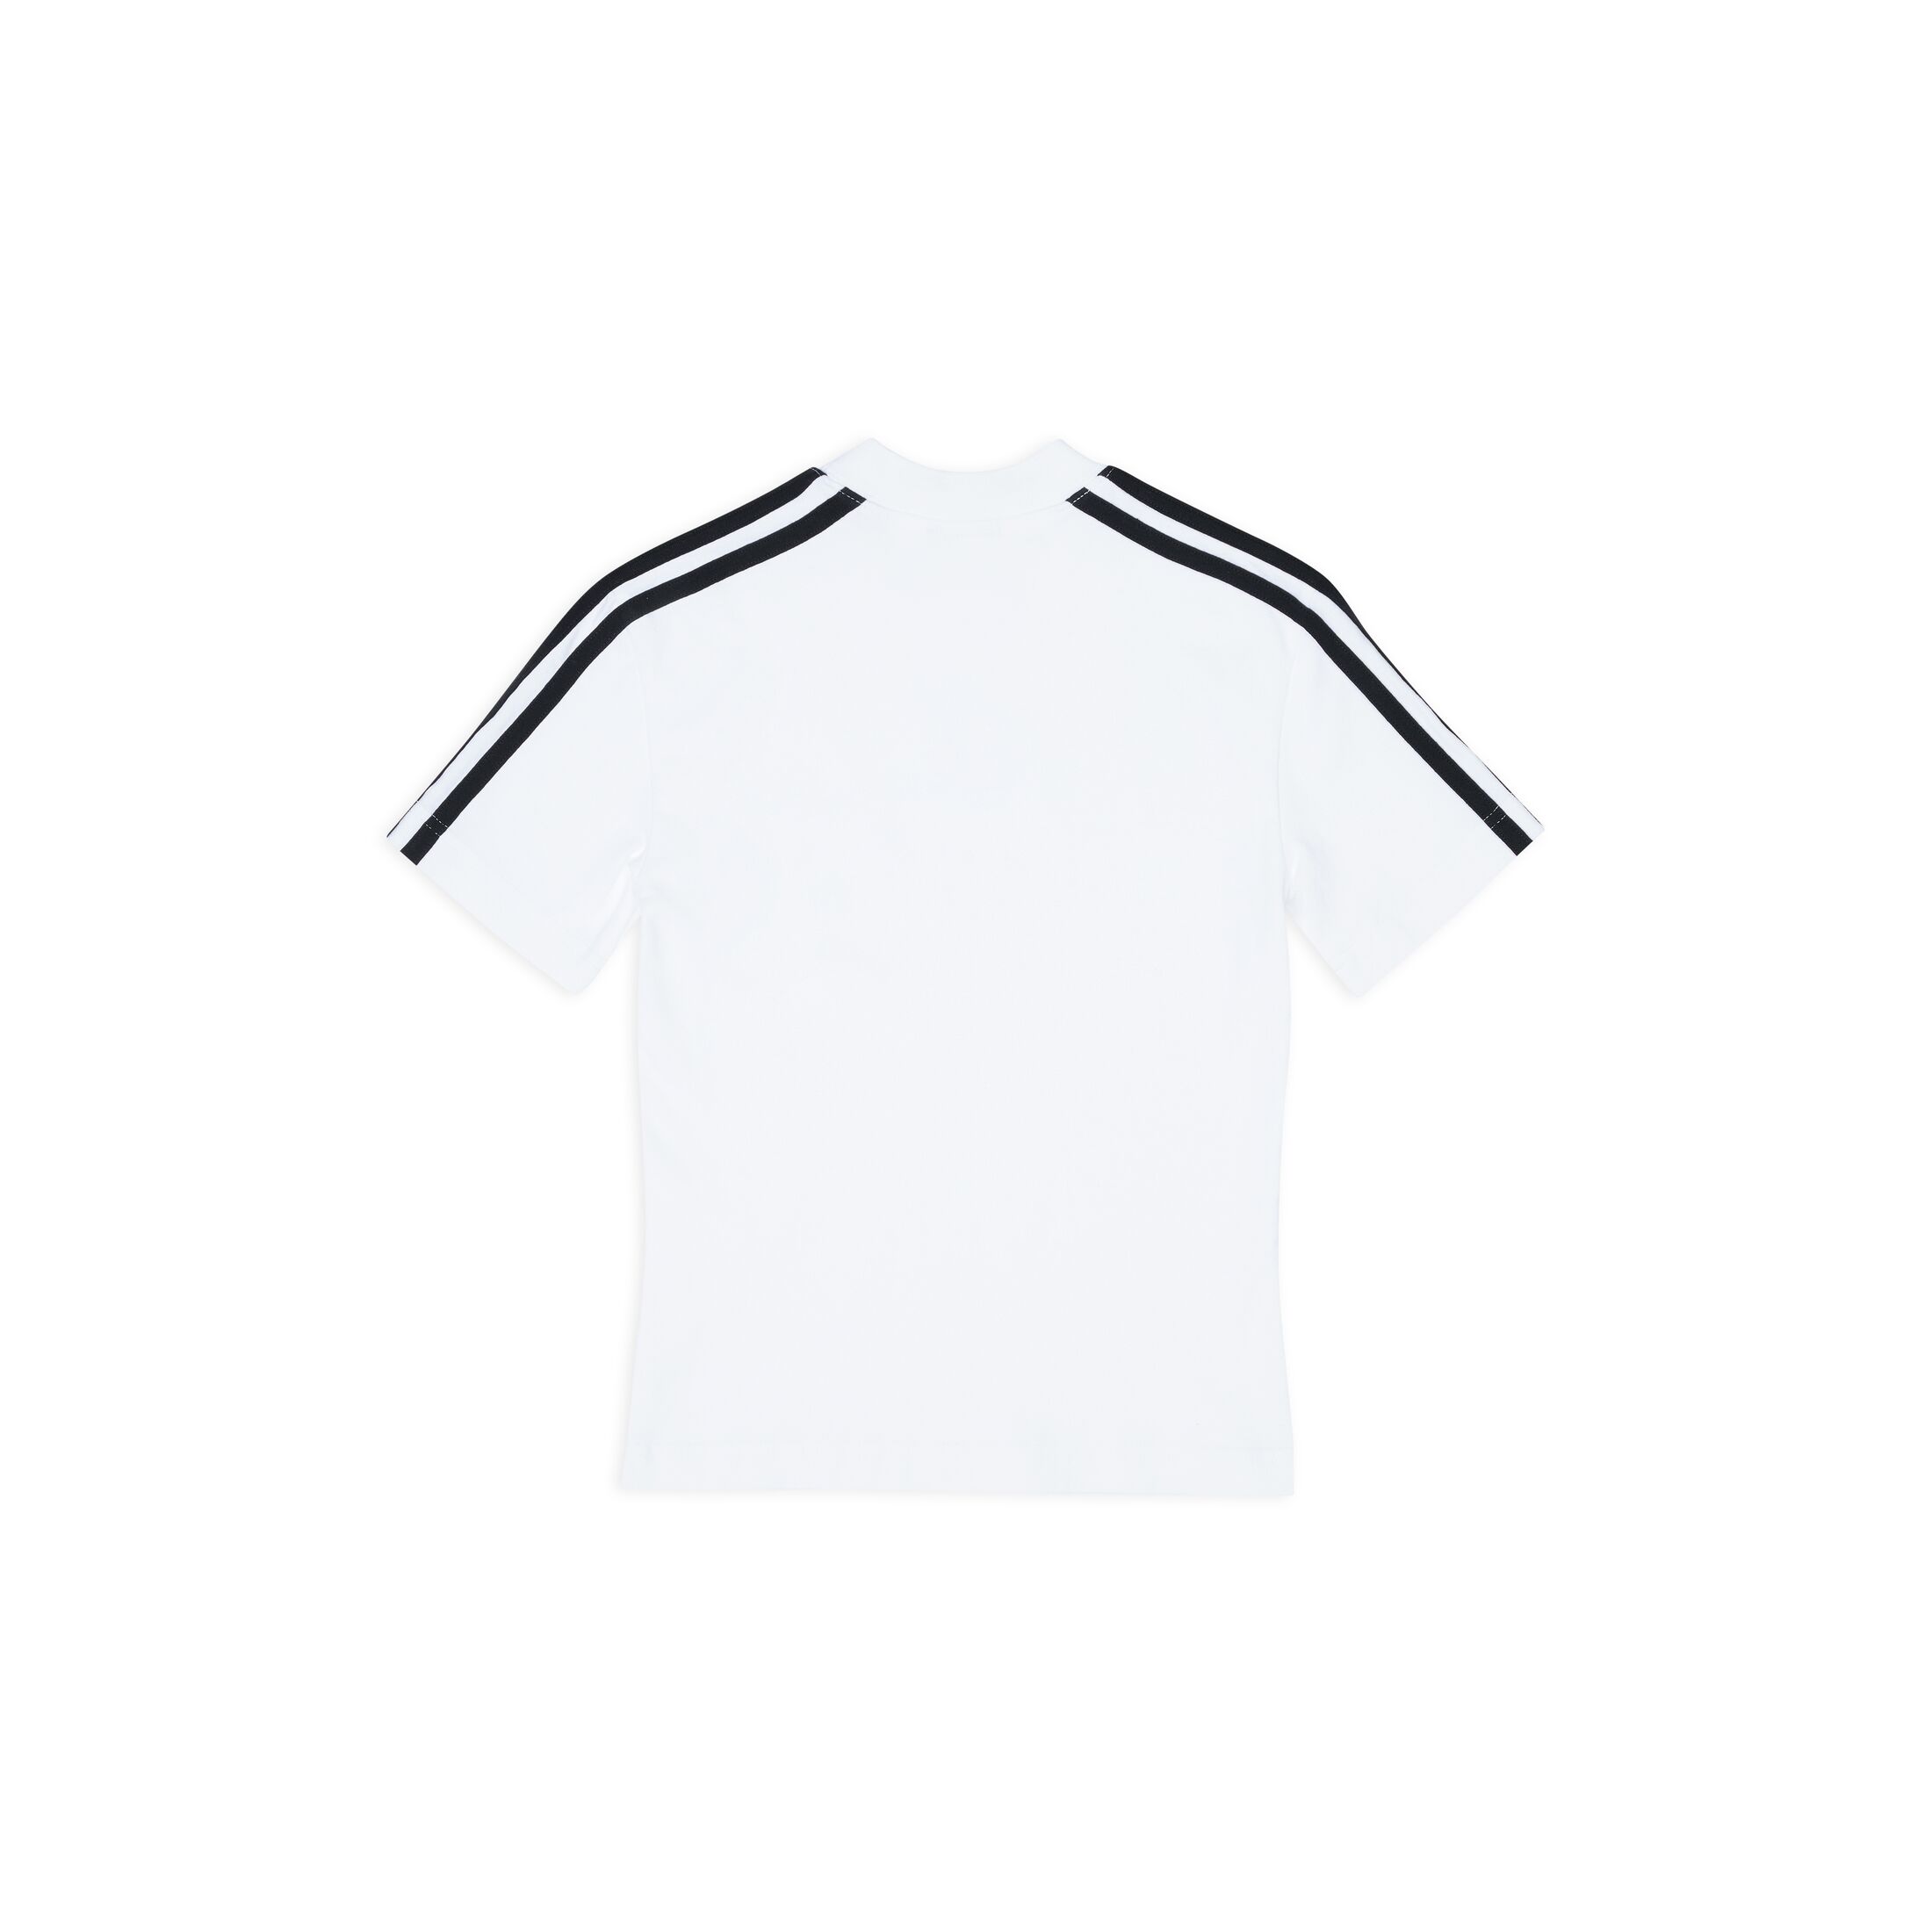 Balenciaga x adidas Shrunk T-Shirt White